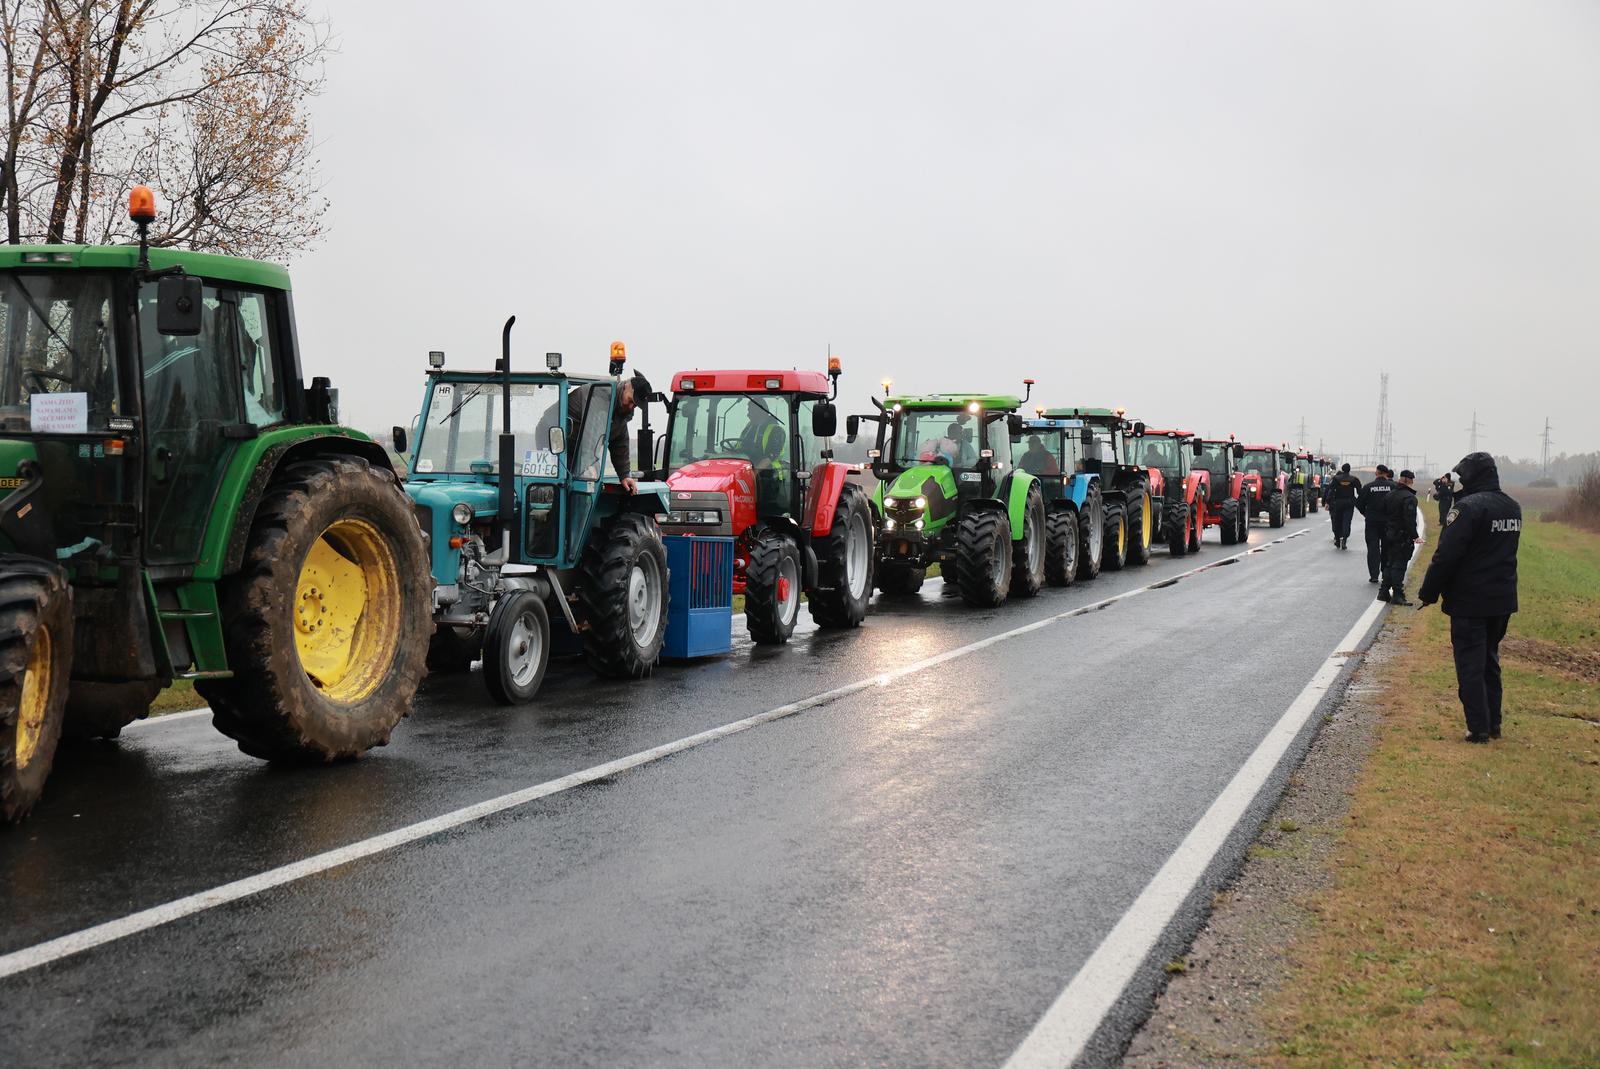 22.11.2022., Zupanja - Prosvjed svinjogojaca koji su nezadovoljni mjerama koje drzava provodi u suzbijanju africke svinjske kuge. Dosli su traktorima na granicu i prosvjedovali na cestama u Vukovarsko-srijemskoj zupanije. Photo: Davor Javorovic/PIXSELL